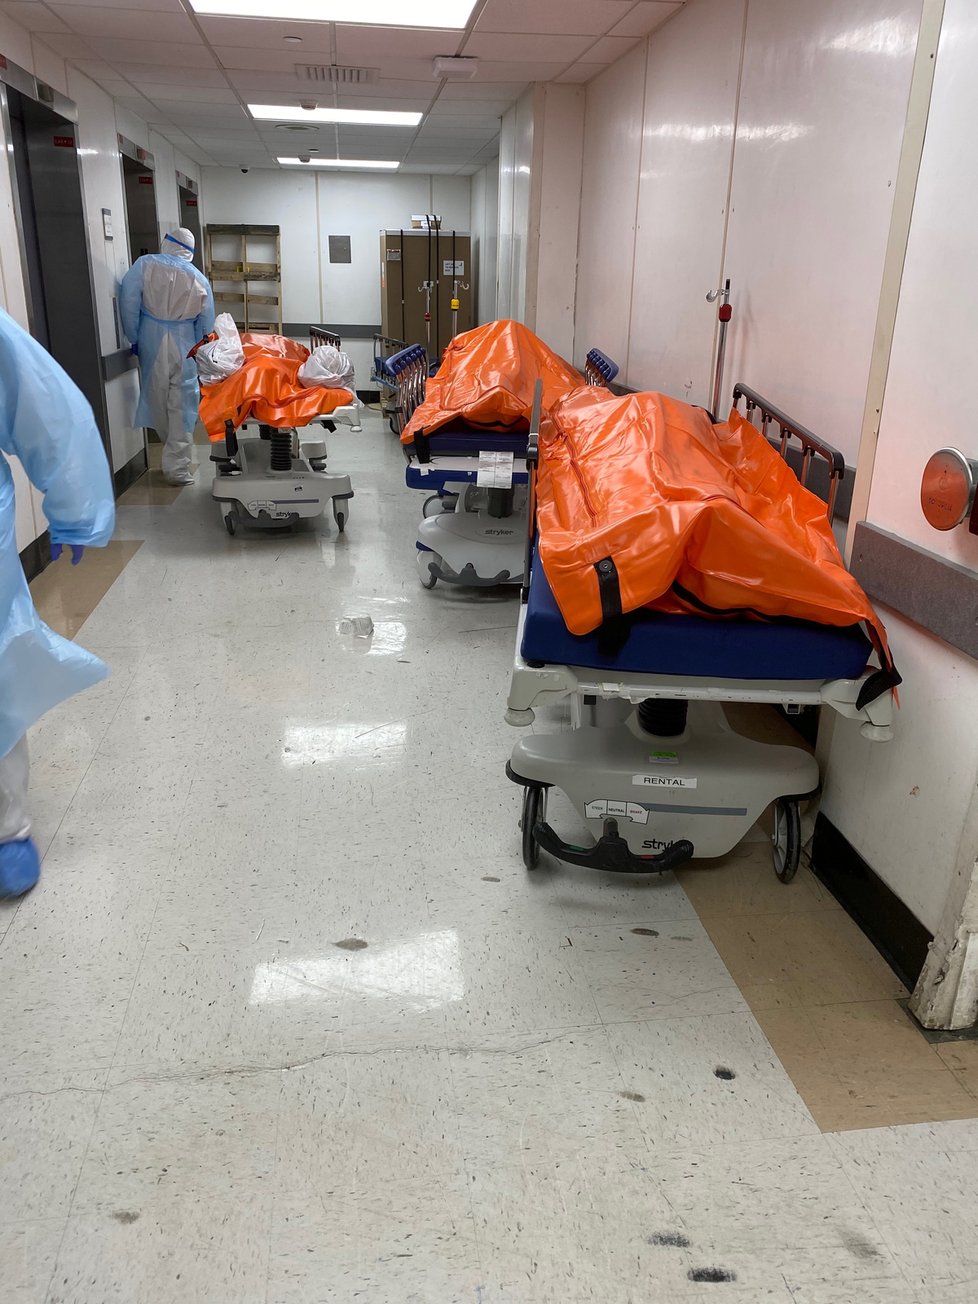 Hororové snímky z nemocnice: Mrtvá těla se hromadí na chodbách, márnice jsou přeplněné.